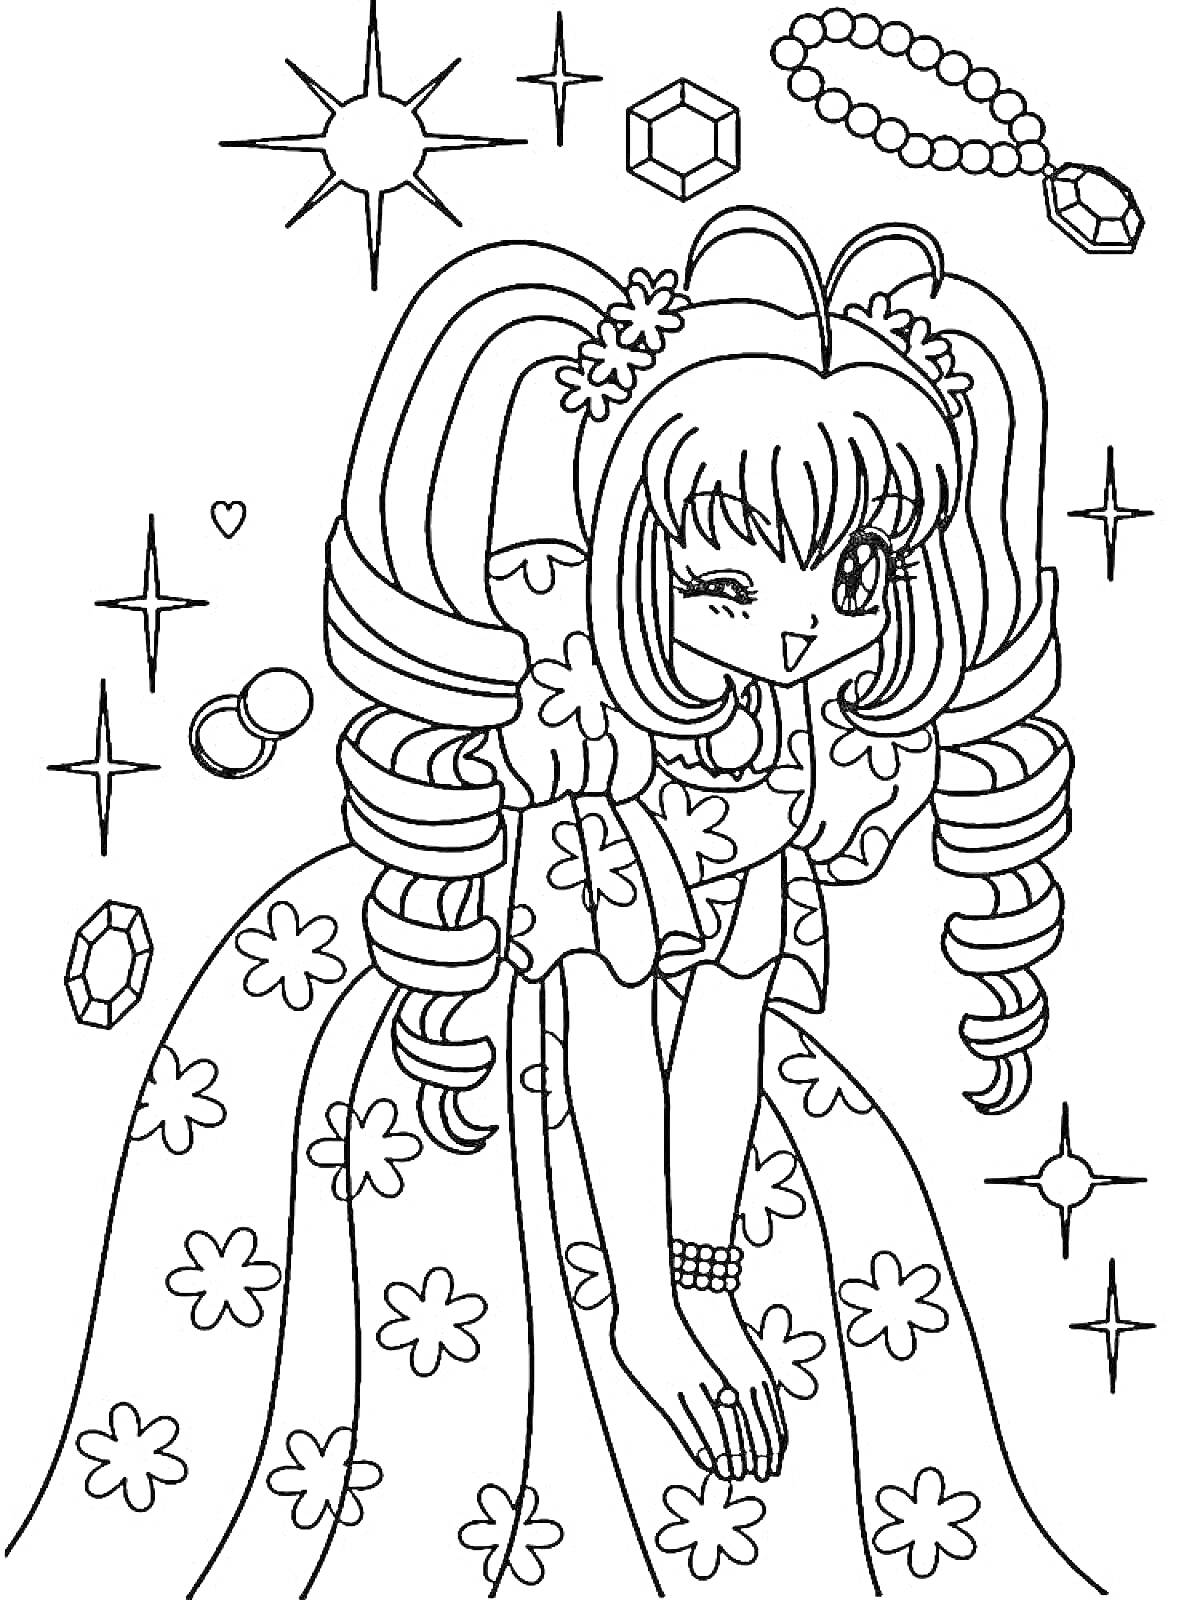 Раскраска Девочка-аниме в платье с цветами, с украшениями и звездами